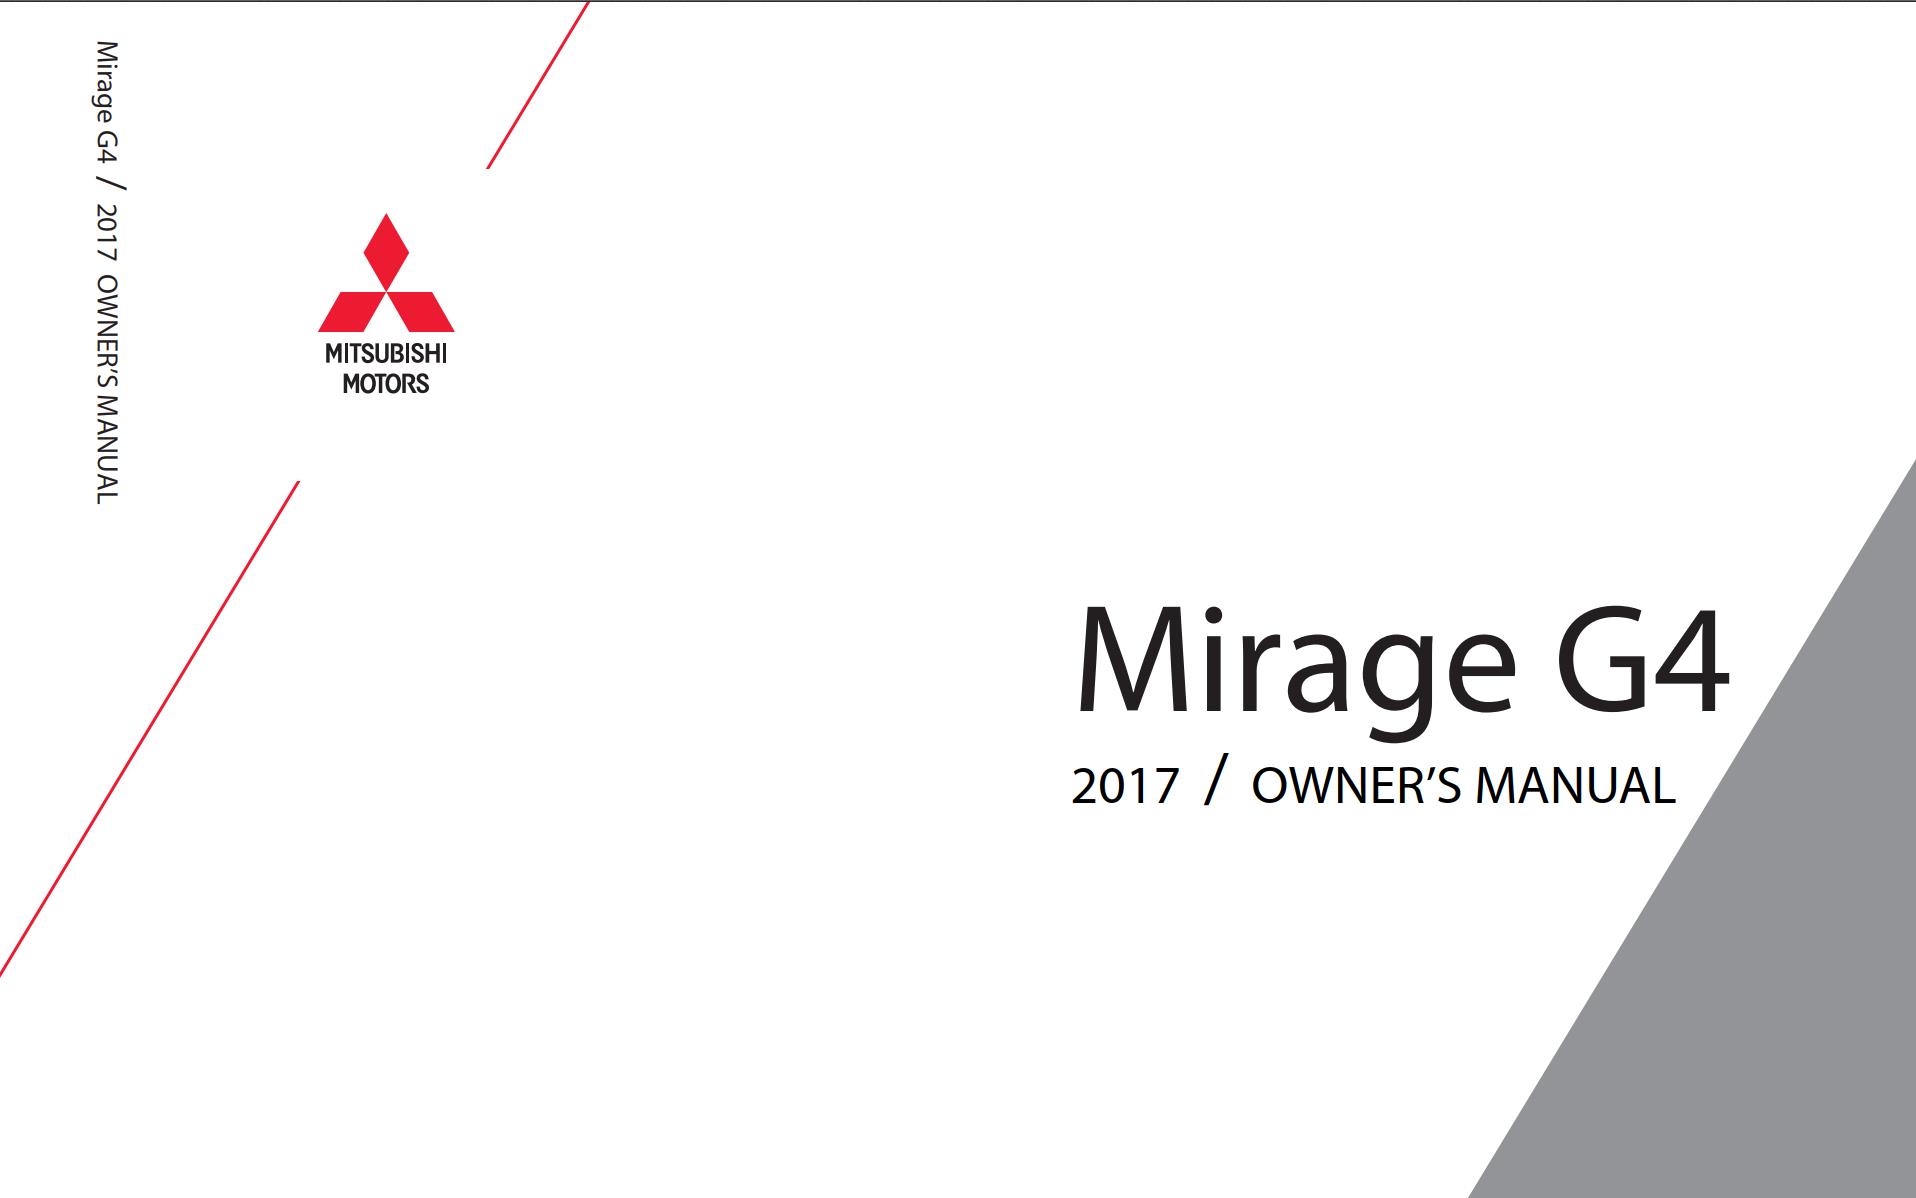 Mitsubishi Mirage G4 2017 Owner S